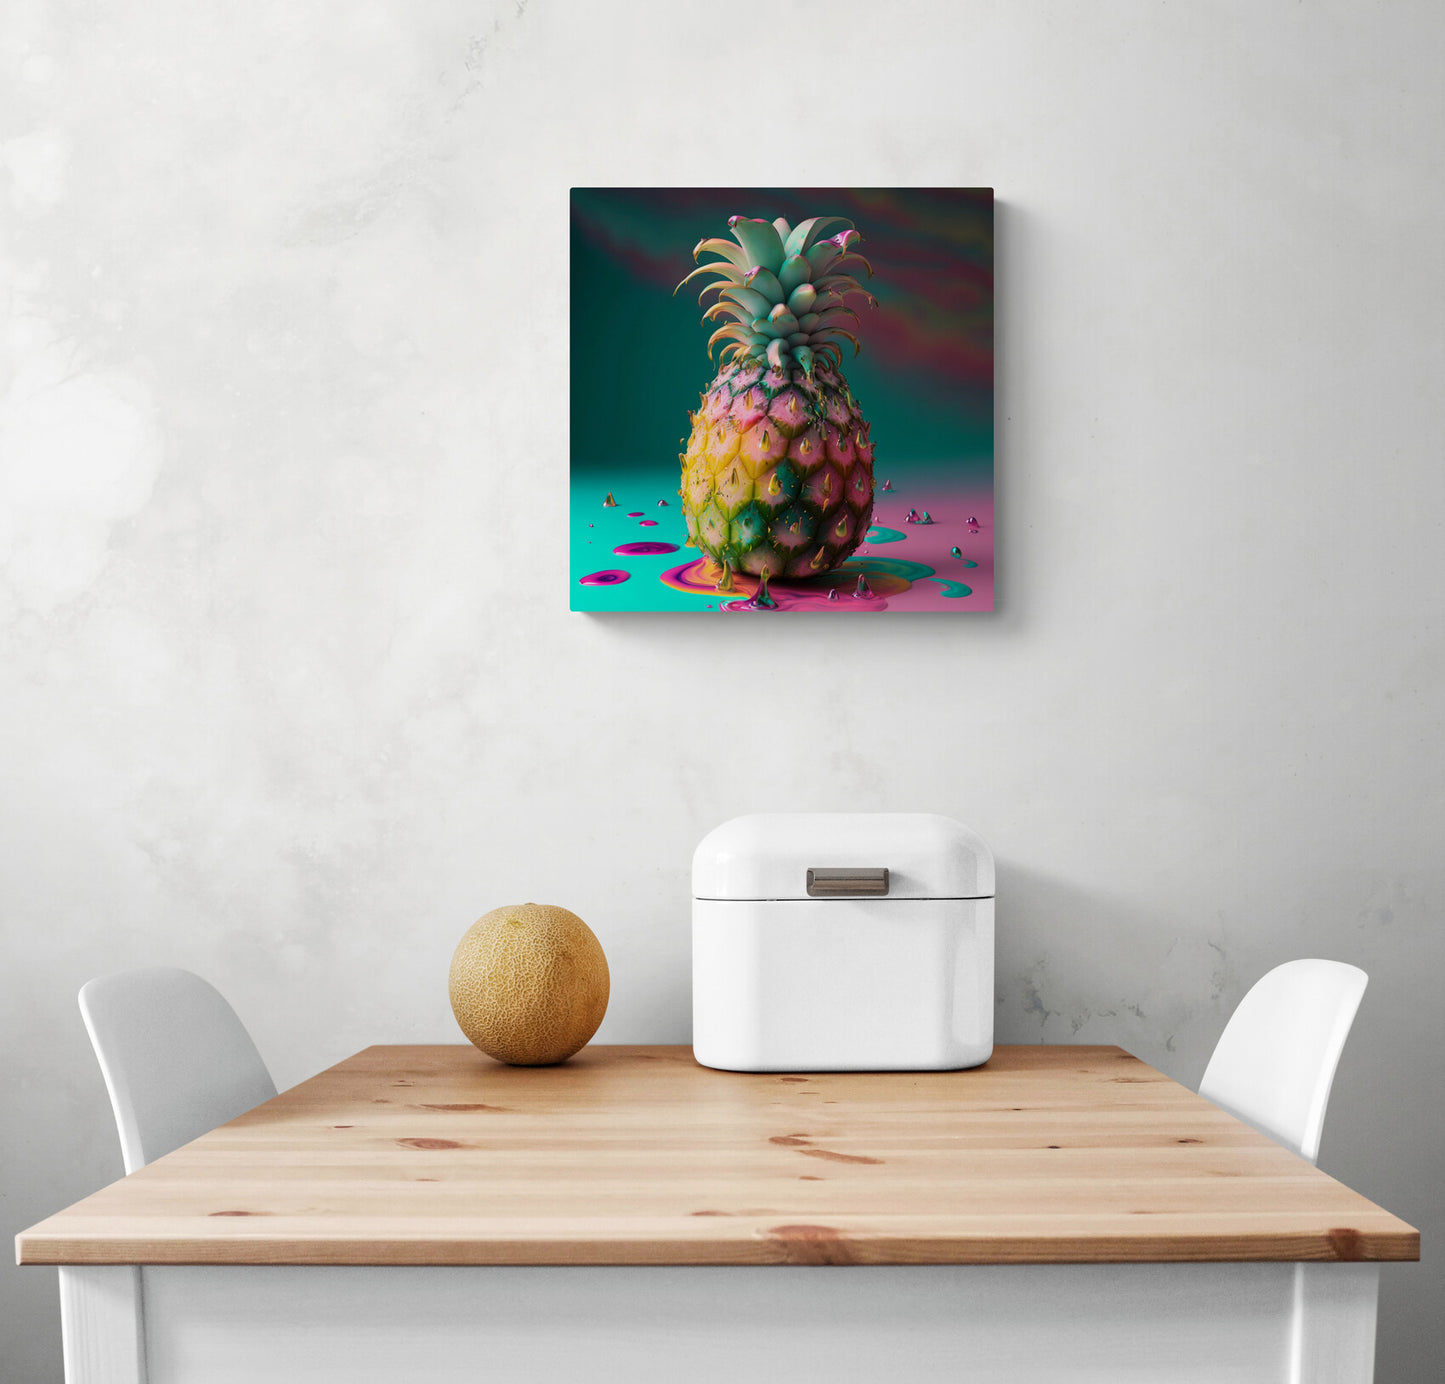 Beau tableau dans une cuisine d'un ananas mis en valeur par des couleurs vives et flashy comme le rose et le bleu turquoise. Noble et élégant, plein de vie, sa chair est juteuse et sa peau dorée. Pour les optimistes qui apprécient la vie en couleurs, même la pluie est rendue agréable et désirable